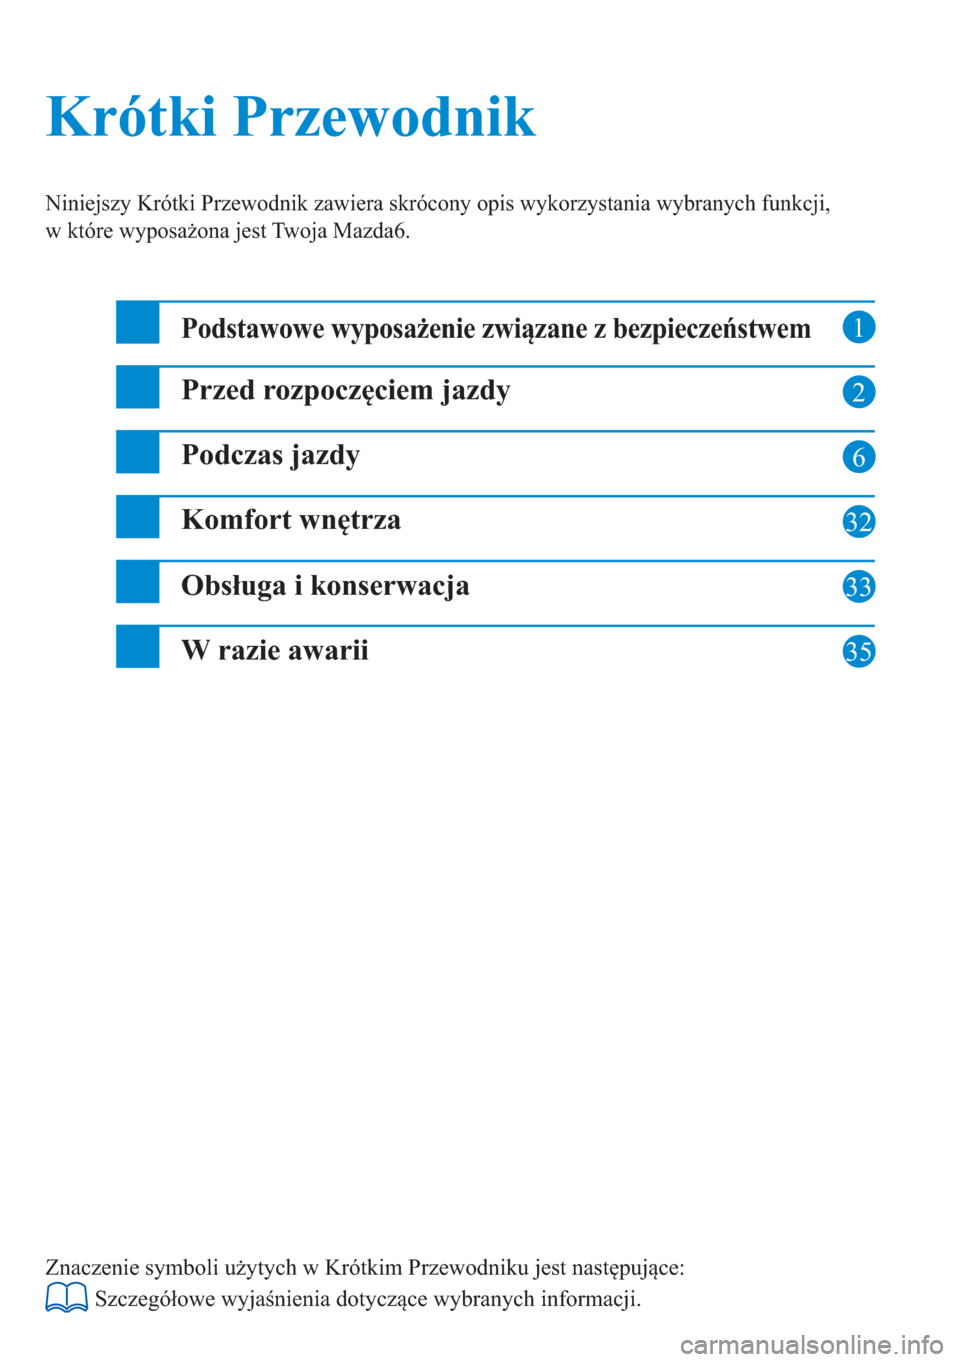 MAZDA MODEL 6 2016  Krótki Przewodnik (in Polish)  1
2
6
32
33
Krótki Przewodnik Krótki Przewodnik
Niniejszy Krótki Przewodnik zawiera skrócony opis wykorzystania wybranych funkcji, 
w które wyposażona jest Twoja Mazda6.
Podstawowe wyposażenie 